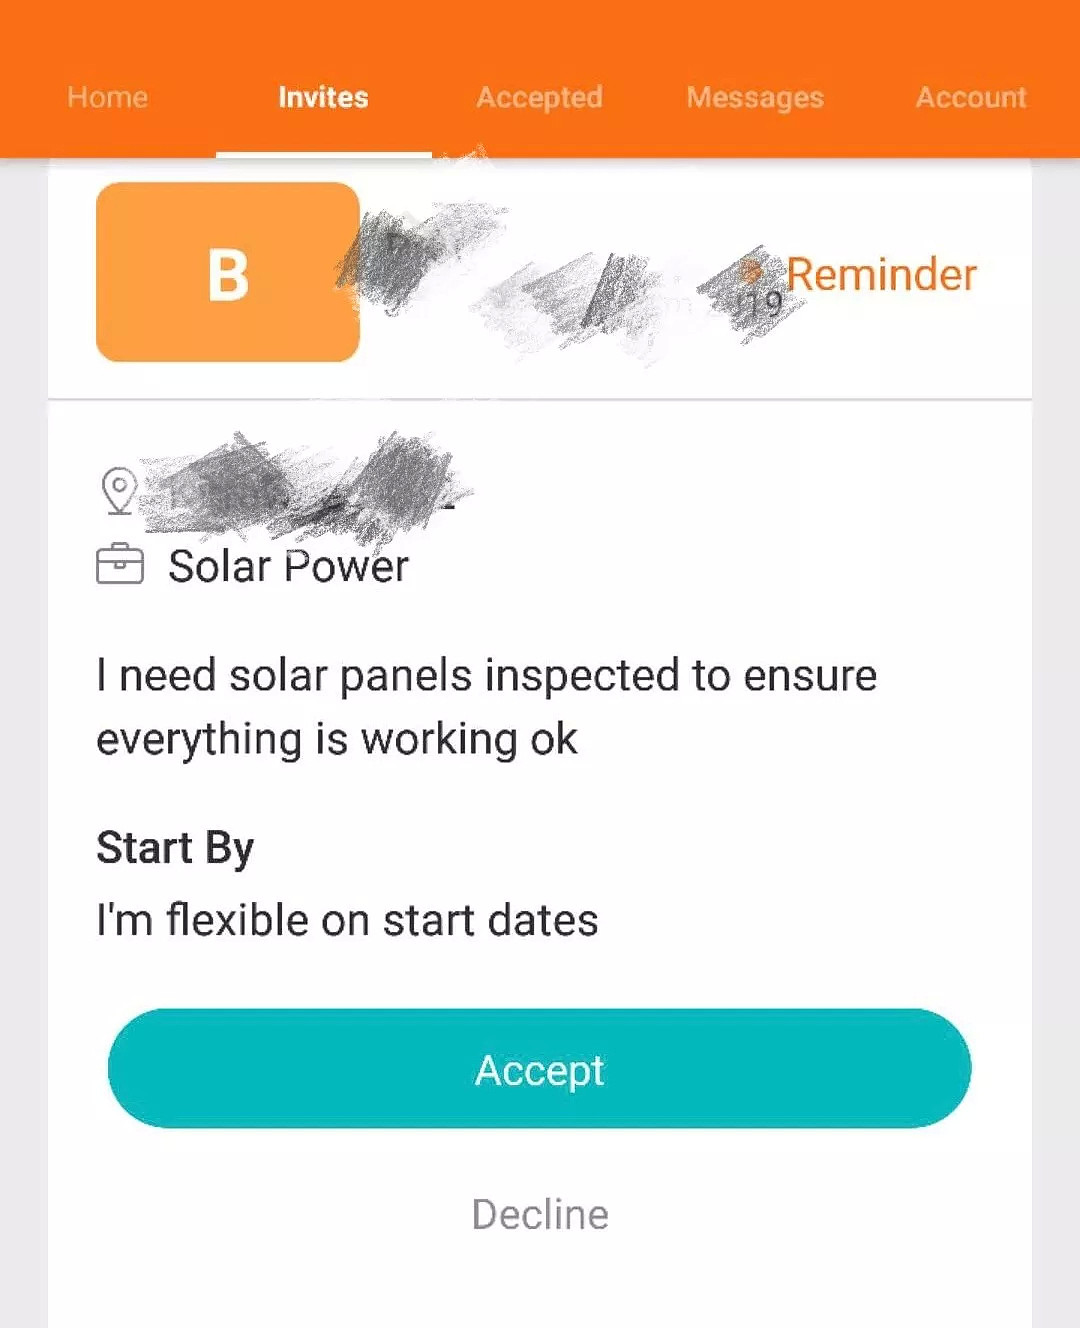 澳洲家庭已深陷太阳能隐患危机！专业太阳能公司说：安装太阳能没那么简单！太阳能投资者必读！ - 9